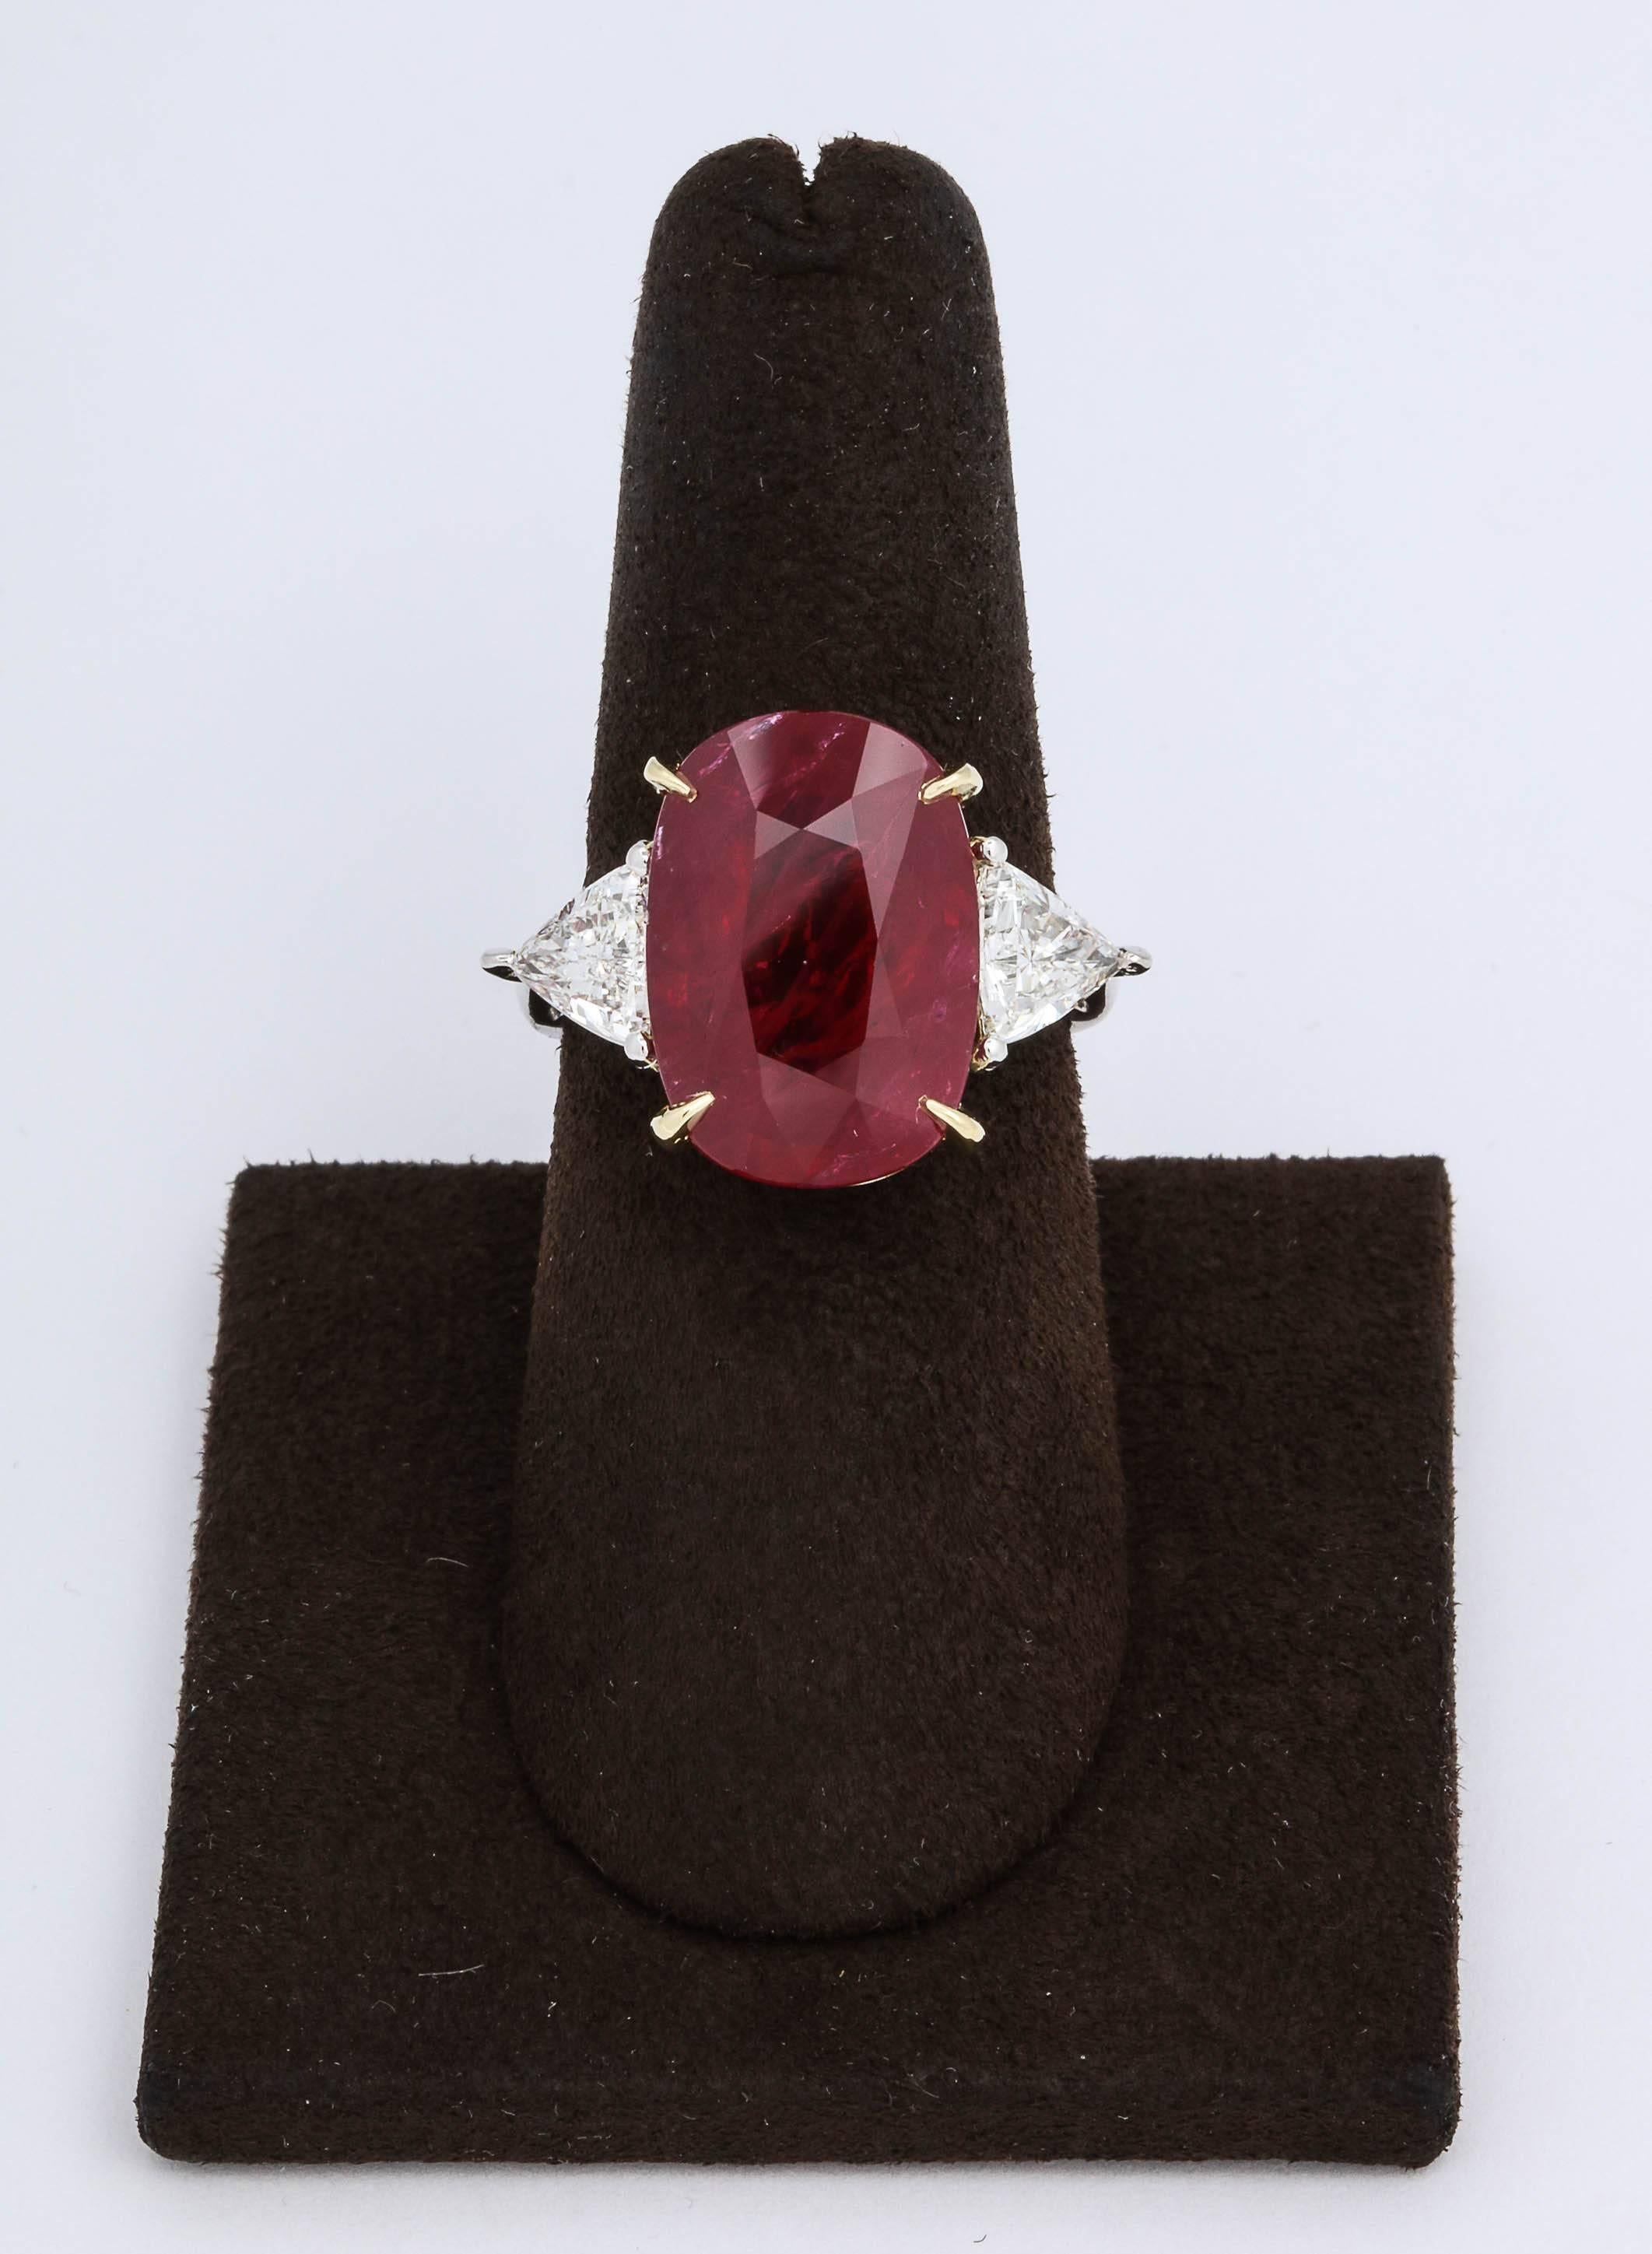 
Eine atemberaubende Mitte Ruby reich an Farbe, eine fantastische Ring!

Ein schöner, länglicher roter Rubin im Kissenschliff.

Mit 1,29 Karat Diamanten im Billionenschliff besetzt.

Der mittlere Rubin misst 16,51 x 11,57 mm - eine fabelhafte